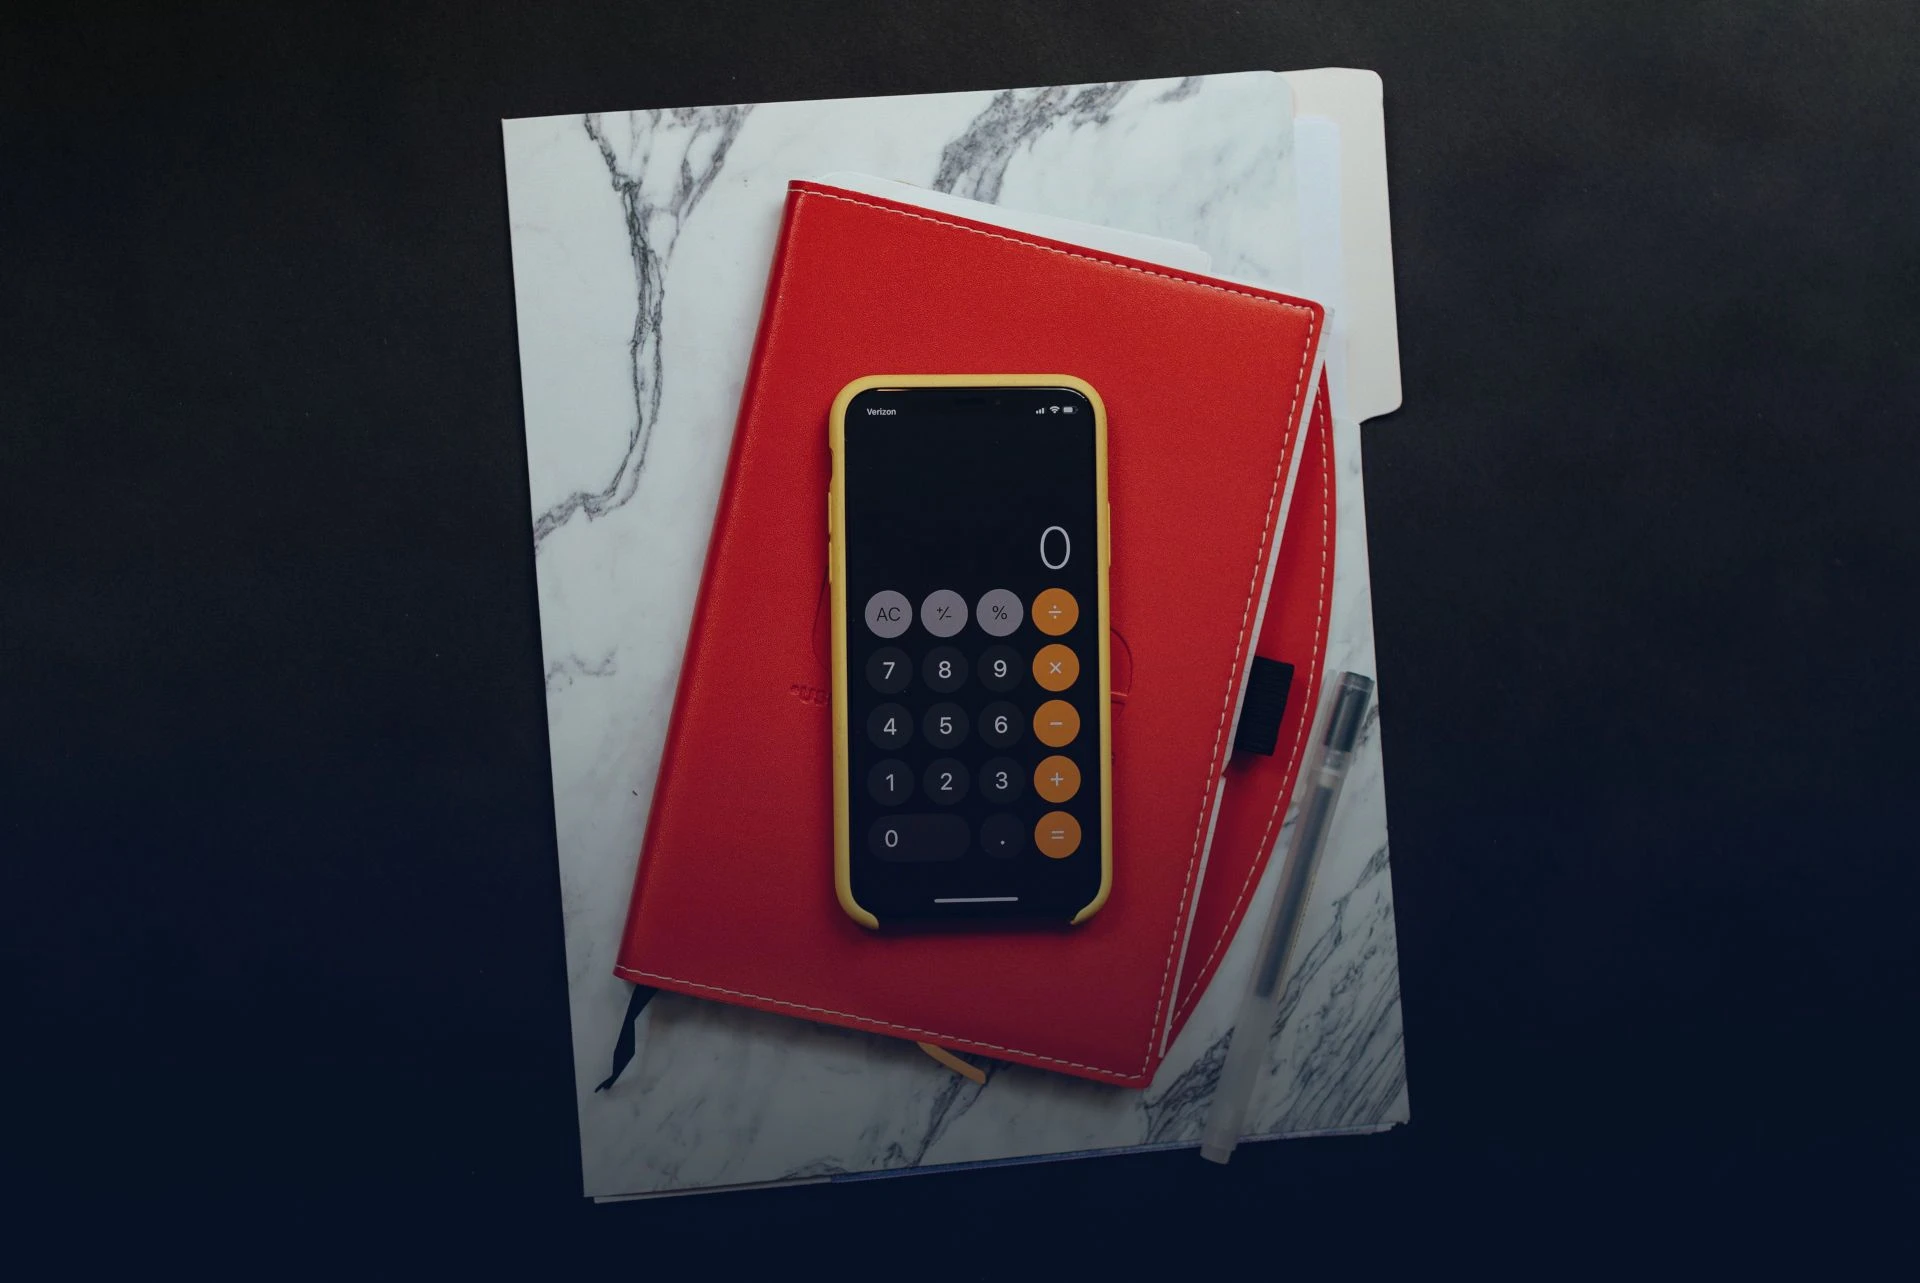 Iphone appoggiato sopra ad una agenda rossa che a sua volta è appoggiata su un computer con cover con disegno di marmo